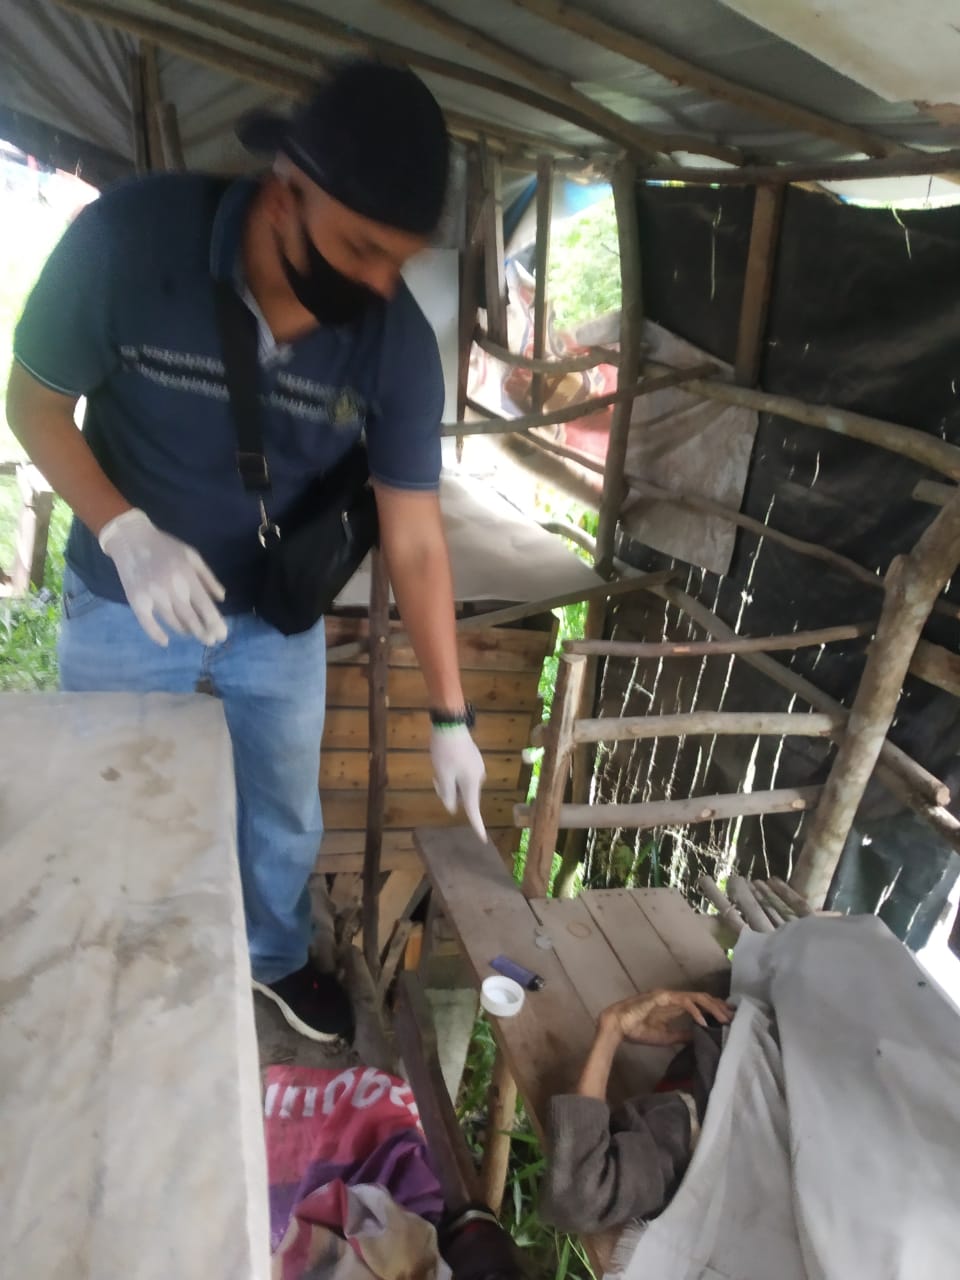 Warga Temukan Mayat di Bangku Warung, Polisi Temukan Obat-obatan dan Kartu Pers